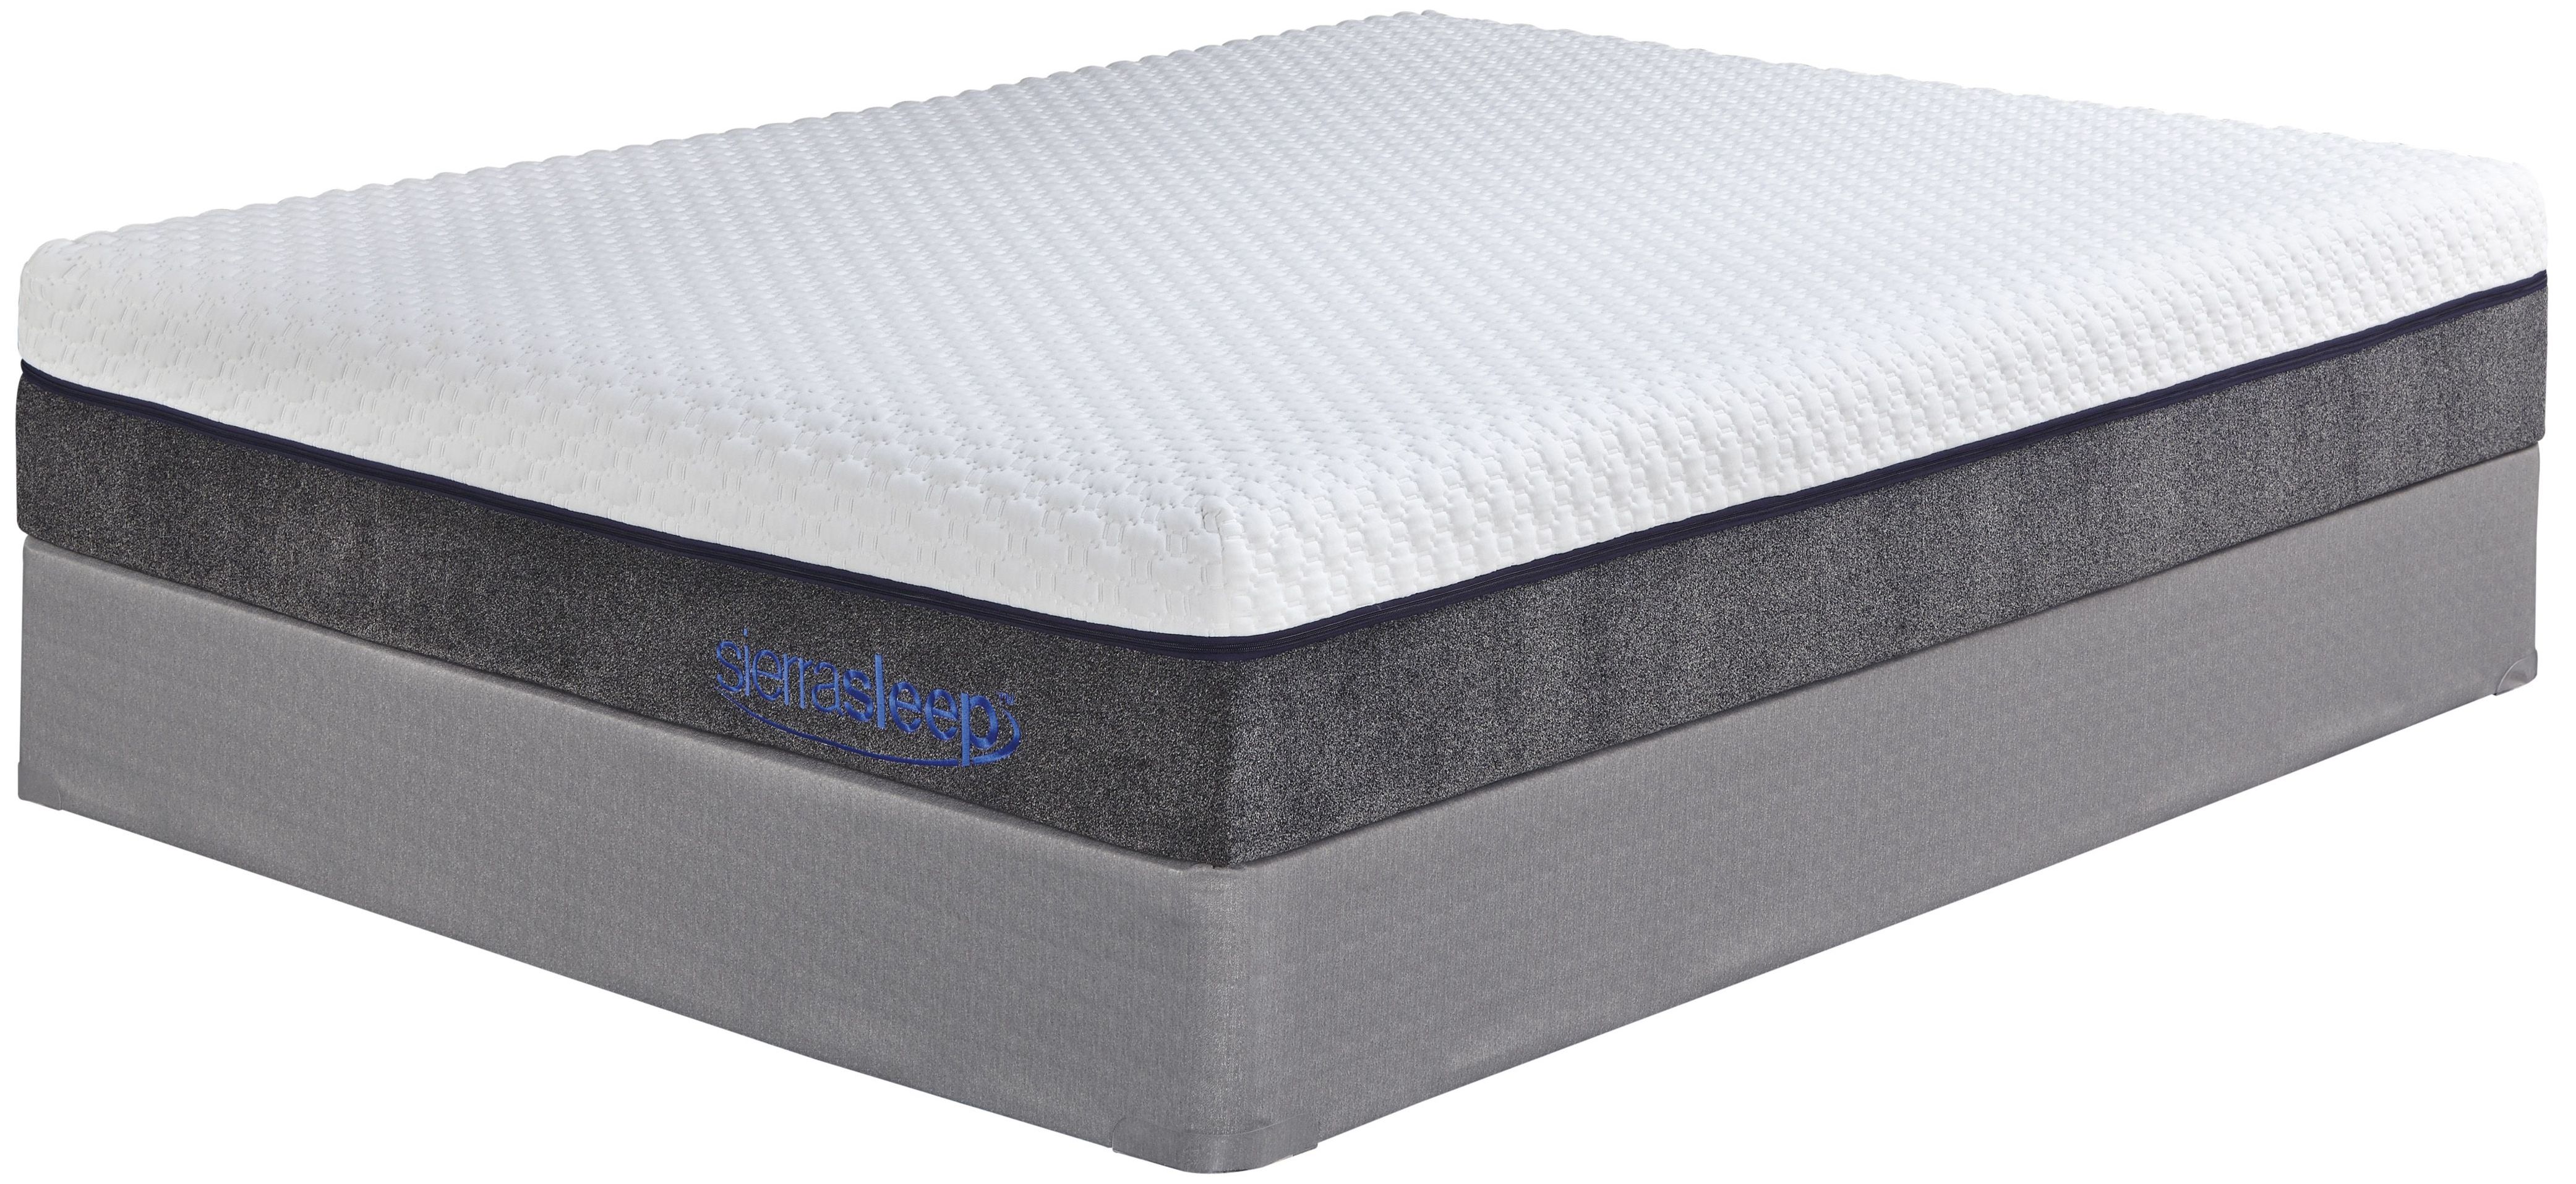 innerspring mattress twin size bed firm comfort sleep